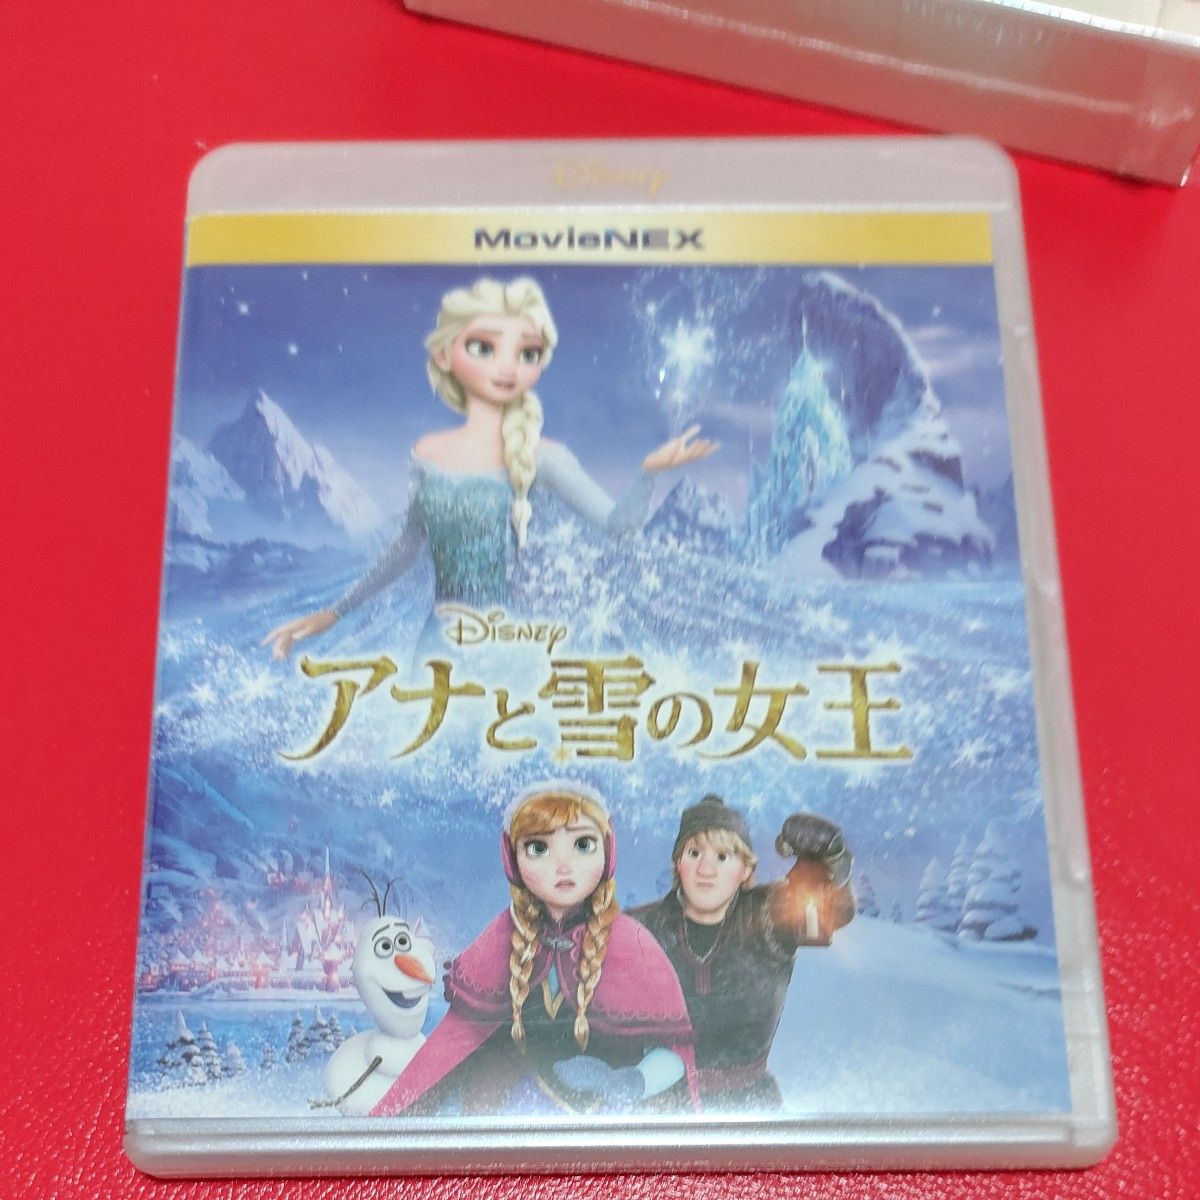 アナと雪の女王2 MovieNEX コンプリートケース付き ブルーレイ+デジタルコピー+MovieNEXワールド Blu-ray